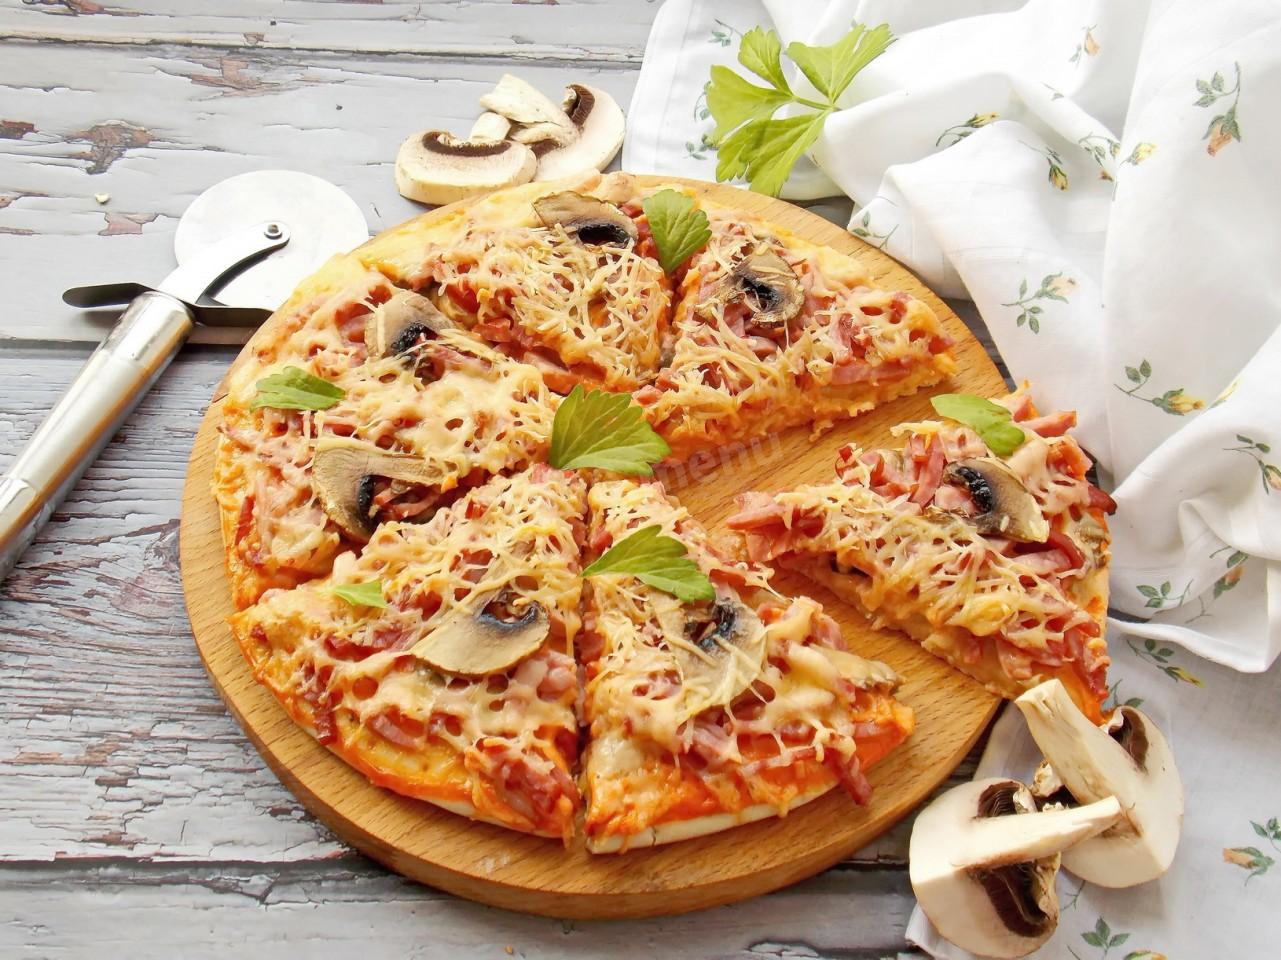 Пицца с сыром сулугуни и колбасой рецепт с фото